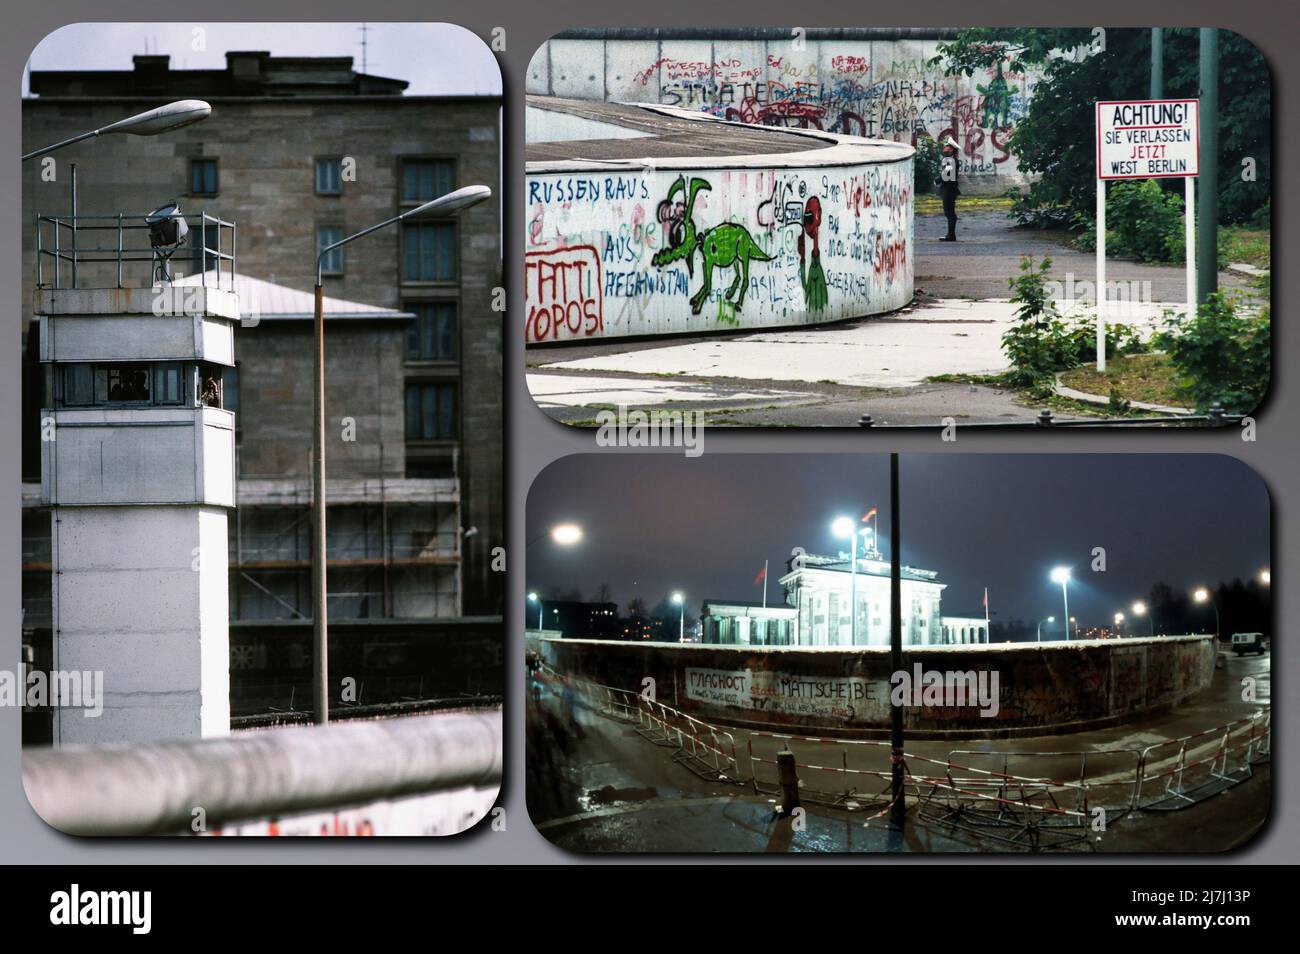 Die Berliner Mauer war eine bewachte Betonbarriere, die Berlin von 1961 bis 1989 physisch und ideologisch teilte. Stockfoto